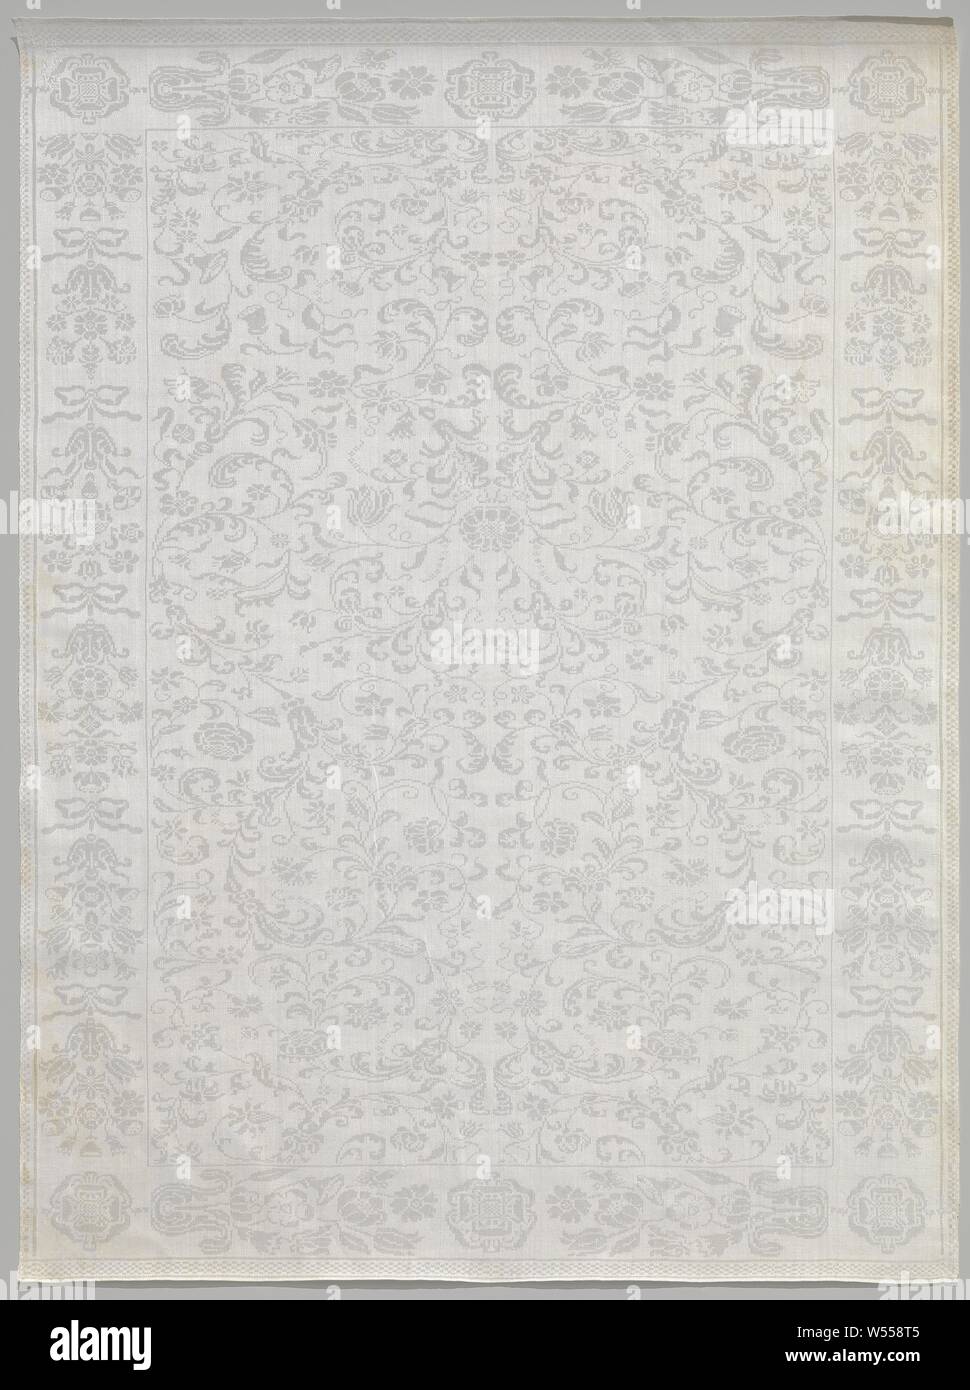 Serviette aus Leinen Damast mit Blumenmuster, Serviette aus Leinen Damast. Das Feld hat einen gespiegelten Muster von dünnen Spiralgehäuse-förmigen Blume Reben. Den Betrieb und die Lügen Kanten haben stilisierten Blumen, Rosetten und Bögen. Die Serviette ist markiert: Crown GS 12 WH., anonym, südlichen Niederlanden (möglicherweise), C. 1690 - C. 1699, Leinen (Material), Damast, H 105,5 cm × w 78,5 cm Stockfoto